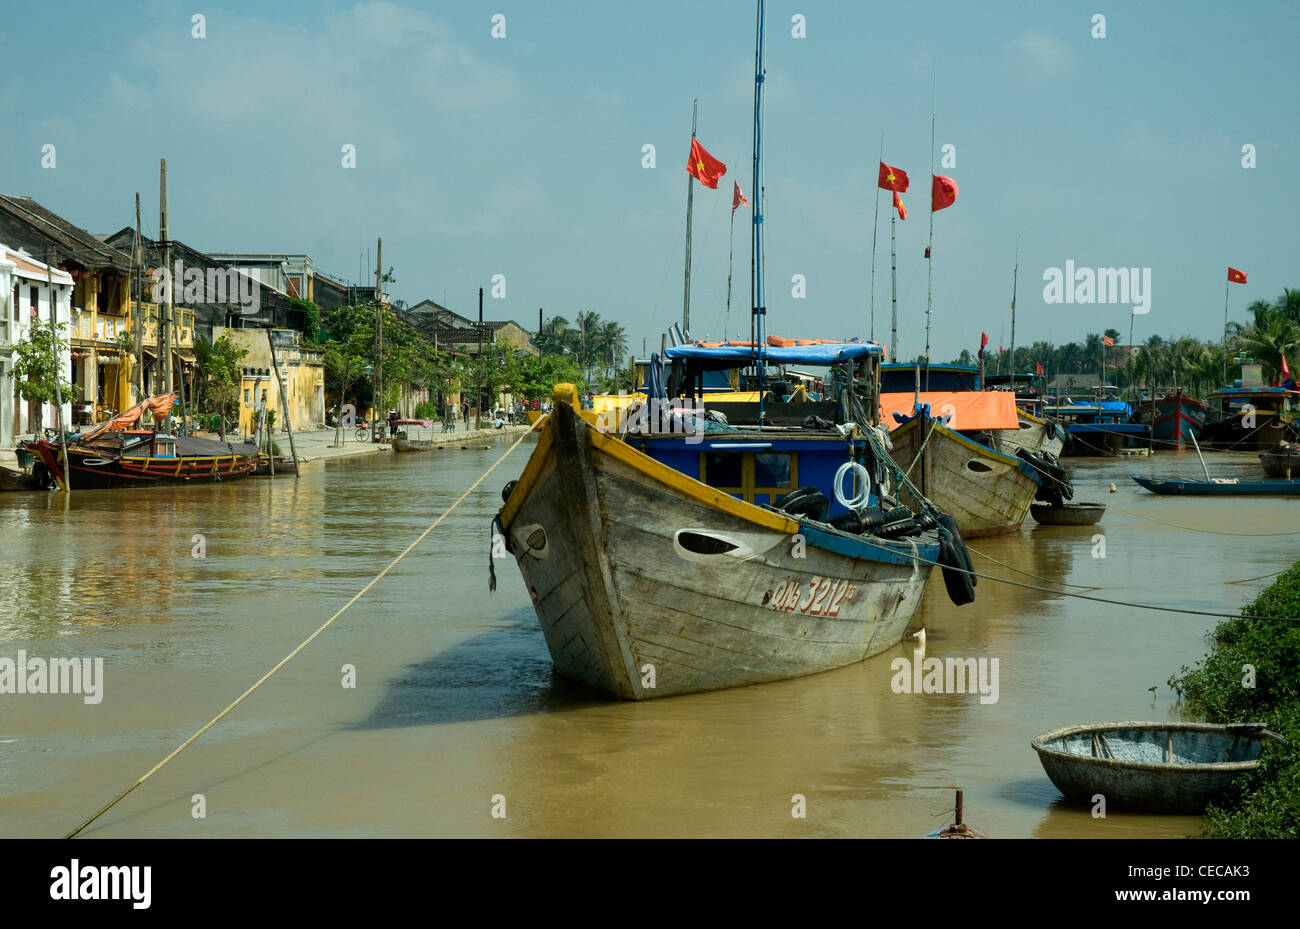 En Hoi An, un histórico puerto comercial vietnamita, de las embarcaciones de madera están anclados en el río Thu Bon Foto de stock